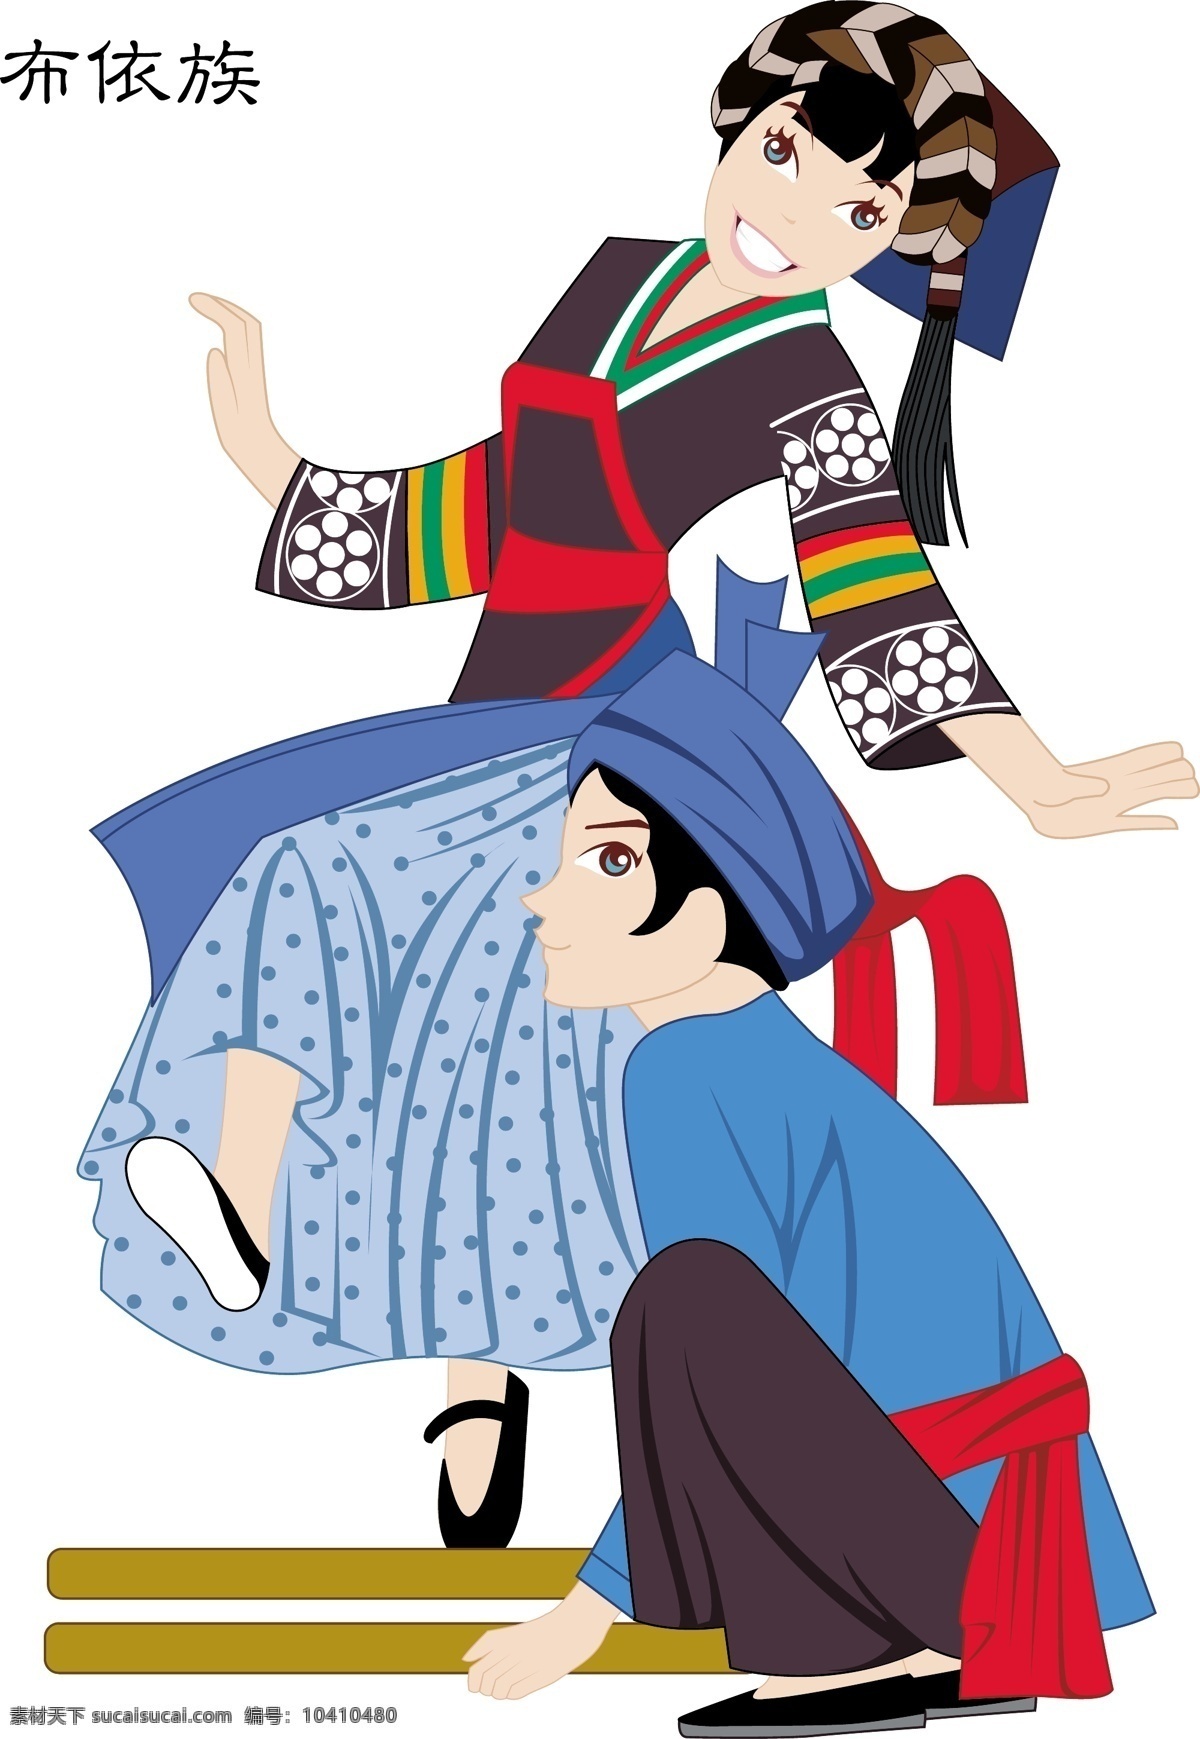 少数民族 人物 插画 56个 民俗 传统 歌舞画 服饰 服装 卡通图案 名族 人物插画 精美 创意 装饰 图案 地方特色 民族特色 动漫动画 动漫人物